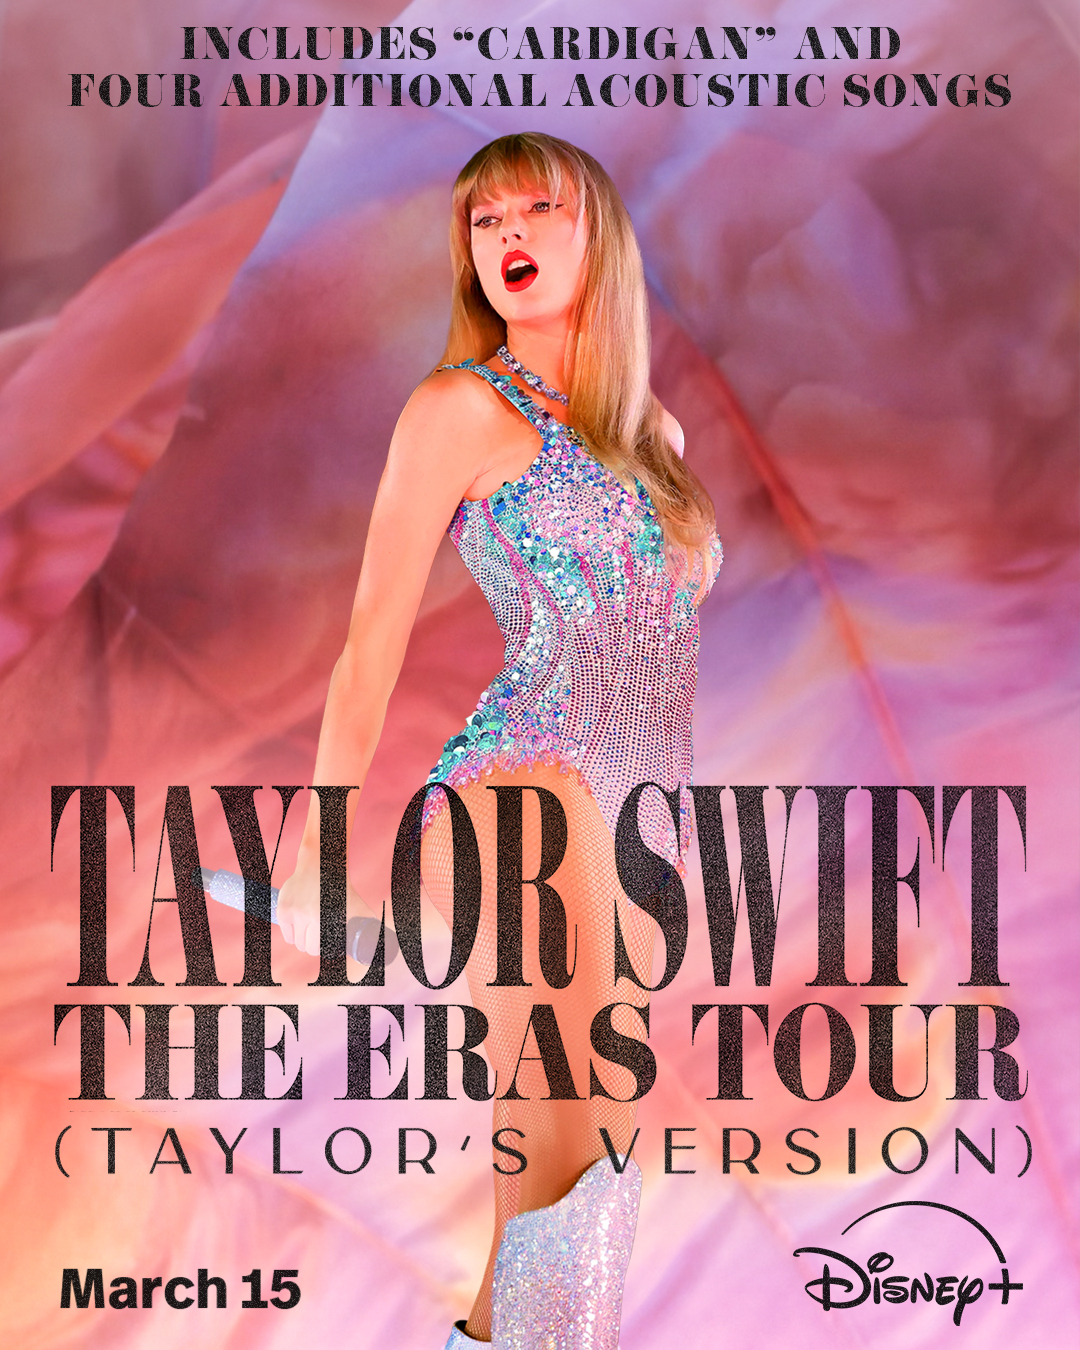 Taylor Swift: The Eras Tour (Taylor's Version)